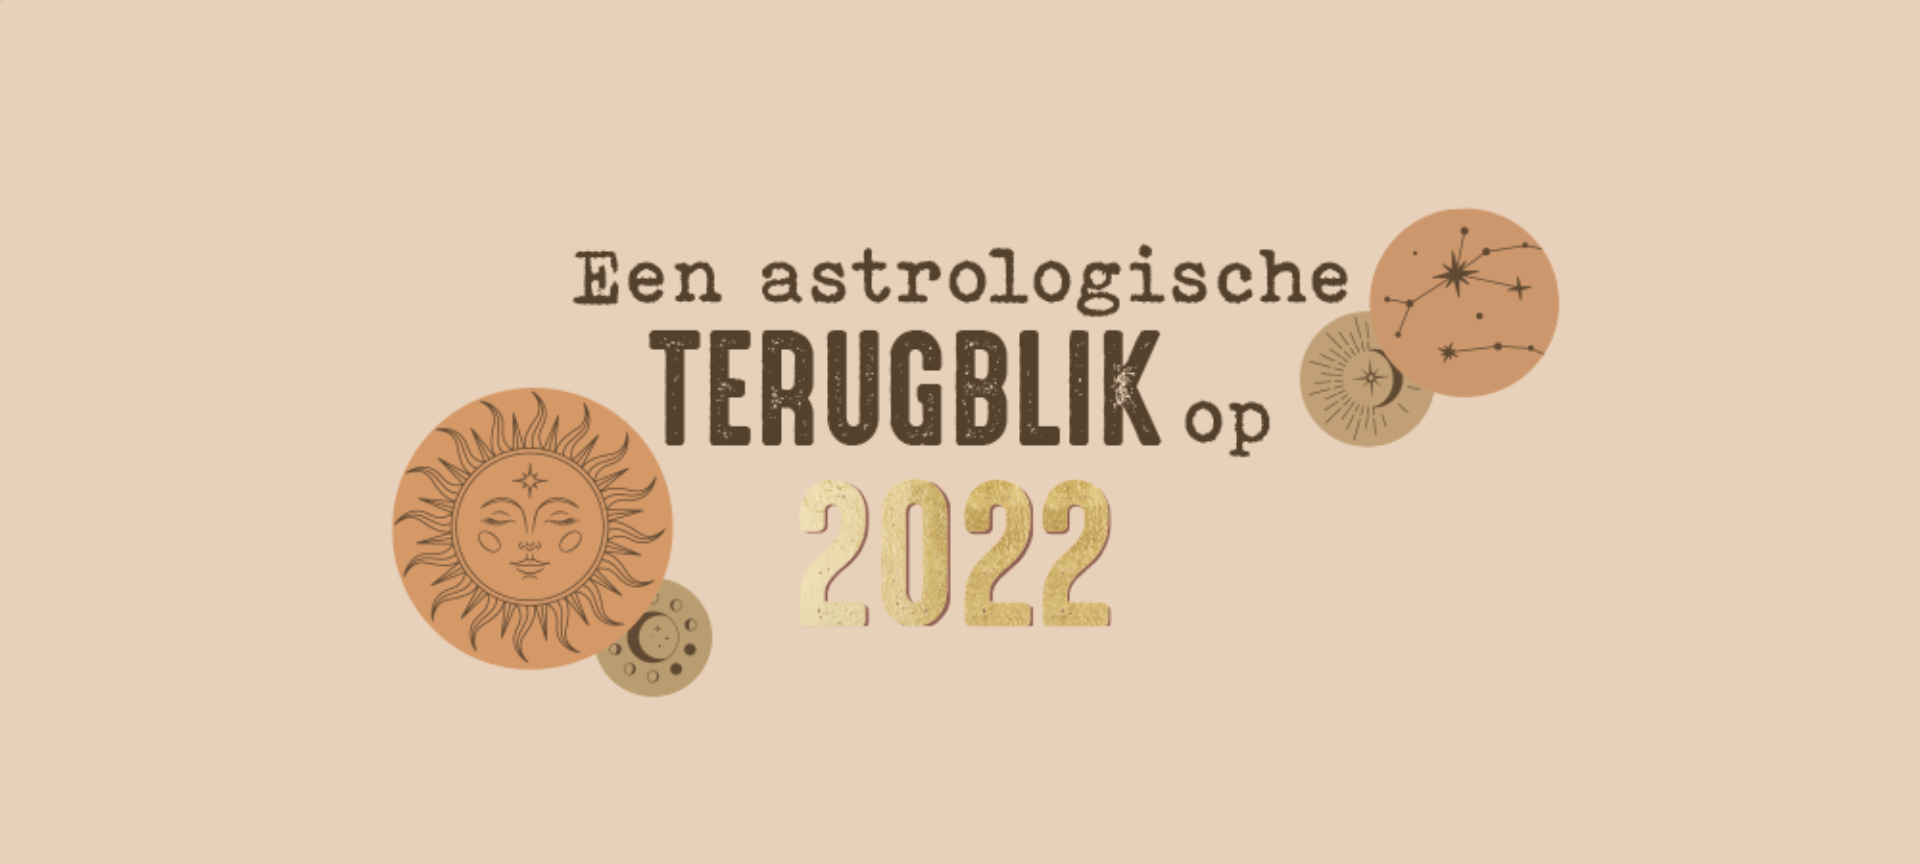 Een astrologische terugblik op 2022